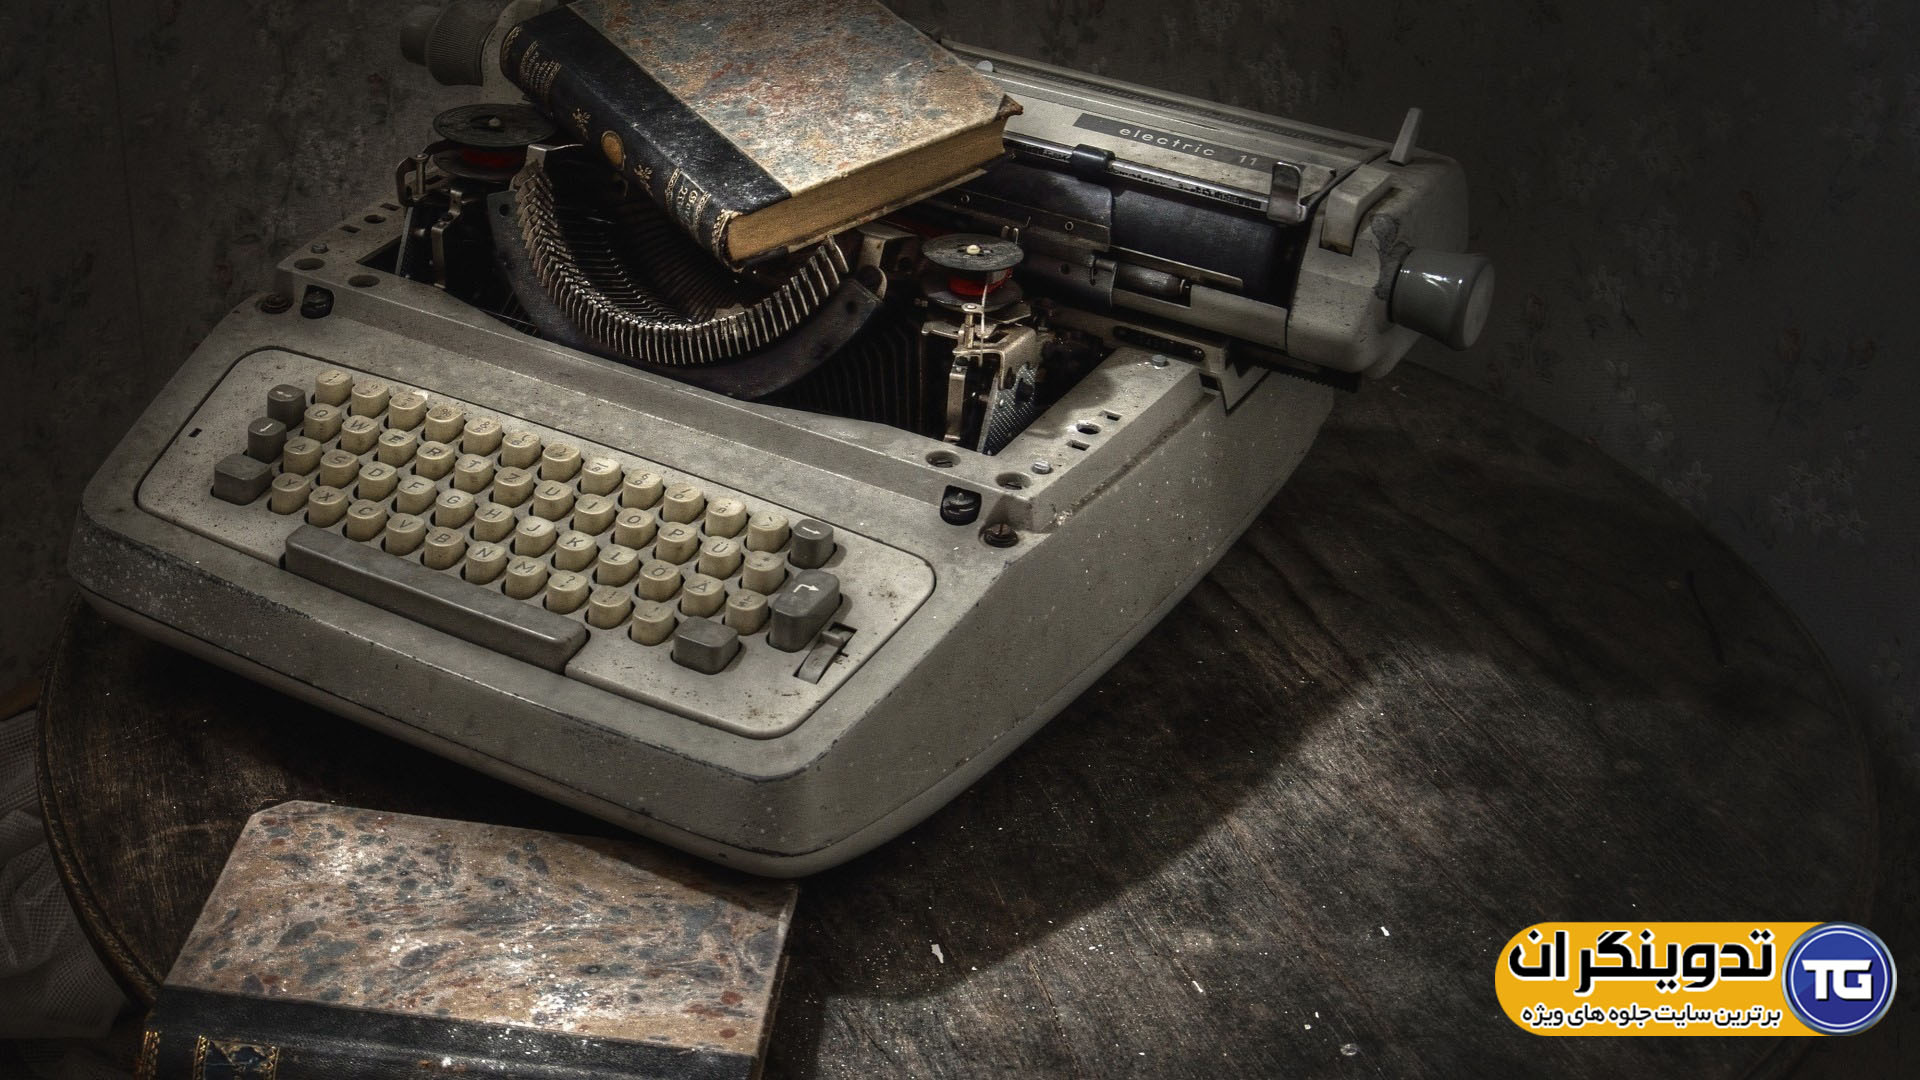 افکت تایپ ماشین تحریر در ادیوس و پریمیر typewriter